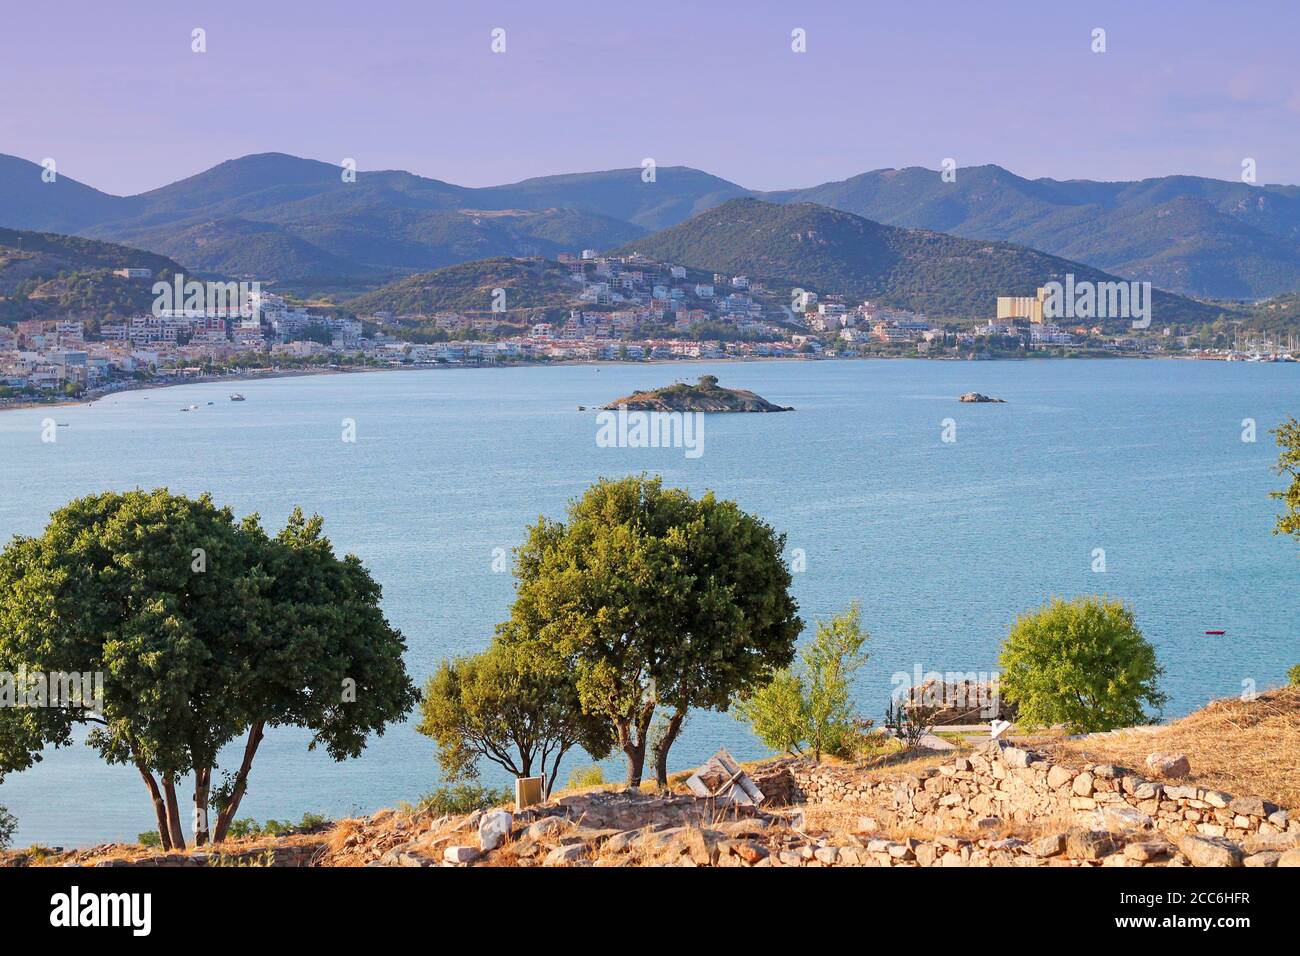 View from medieval castle Anaktoroupolis on town Nea Peramos. Greece, Aegean Sea. Stock Photo